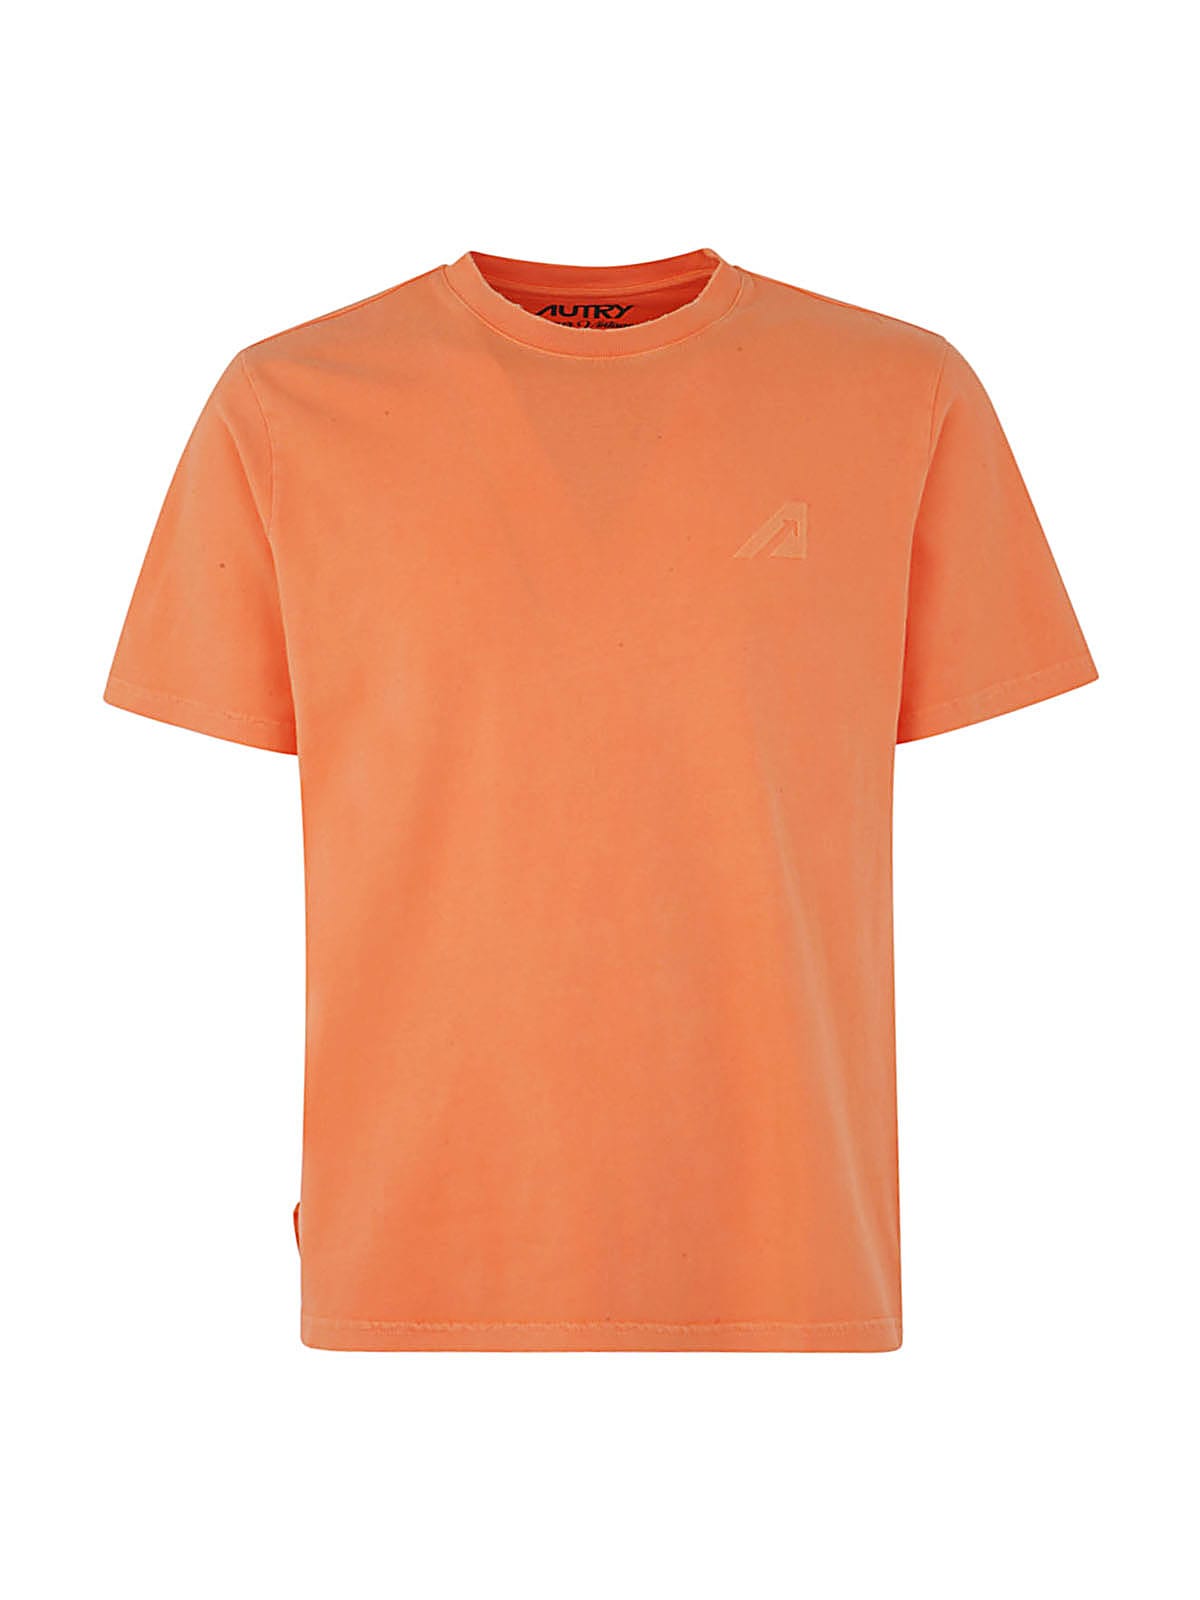 Shop Autry T-shirt Supervintage Man Tinto Orange